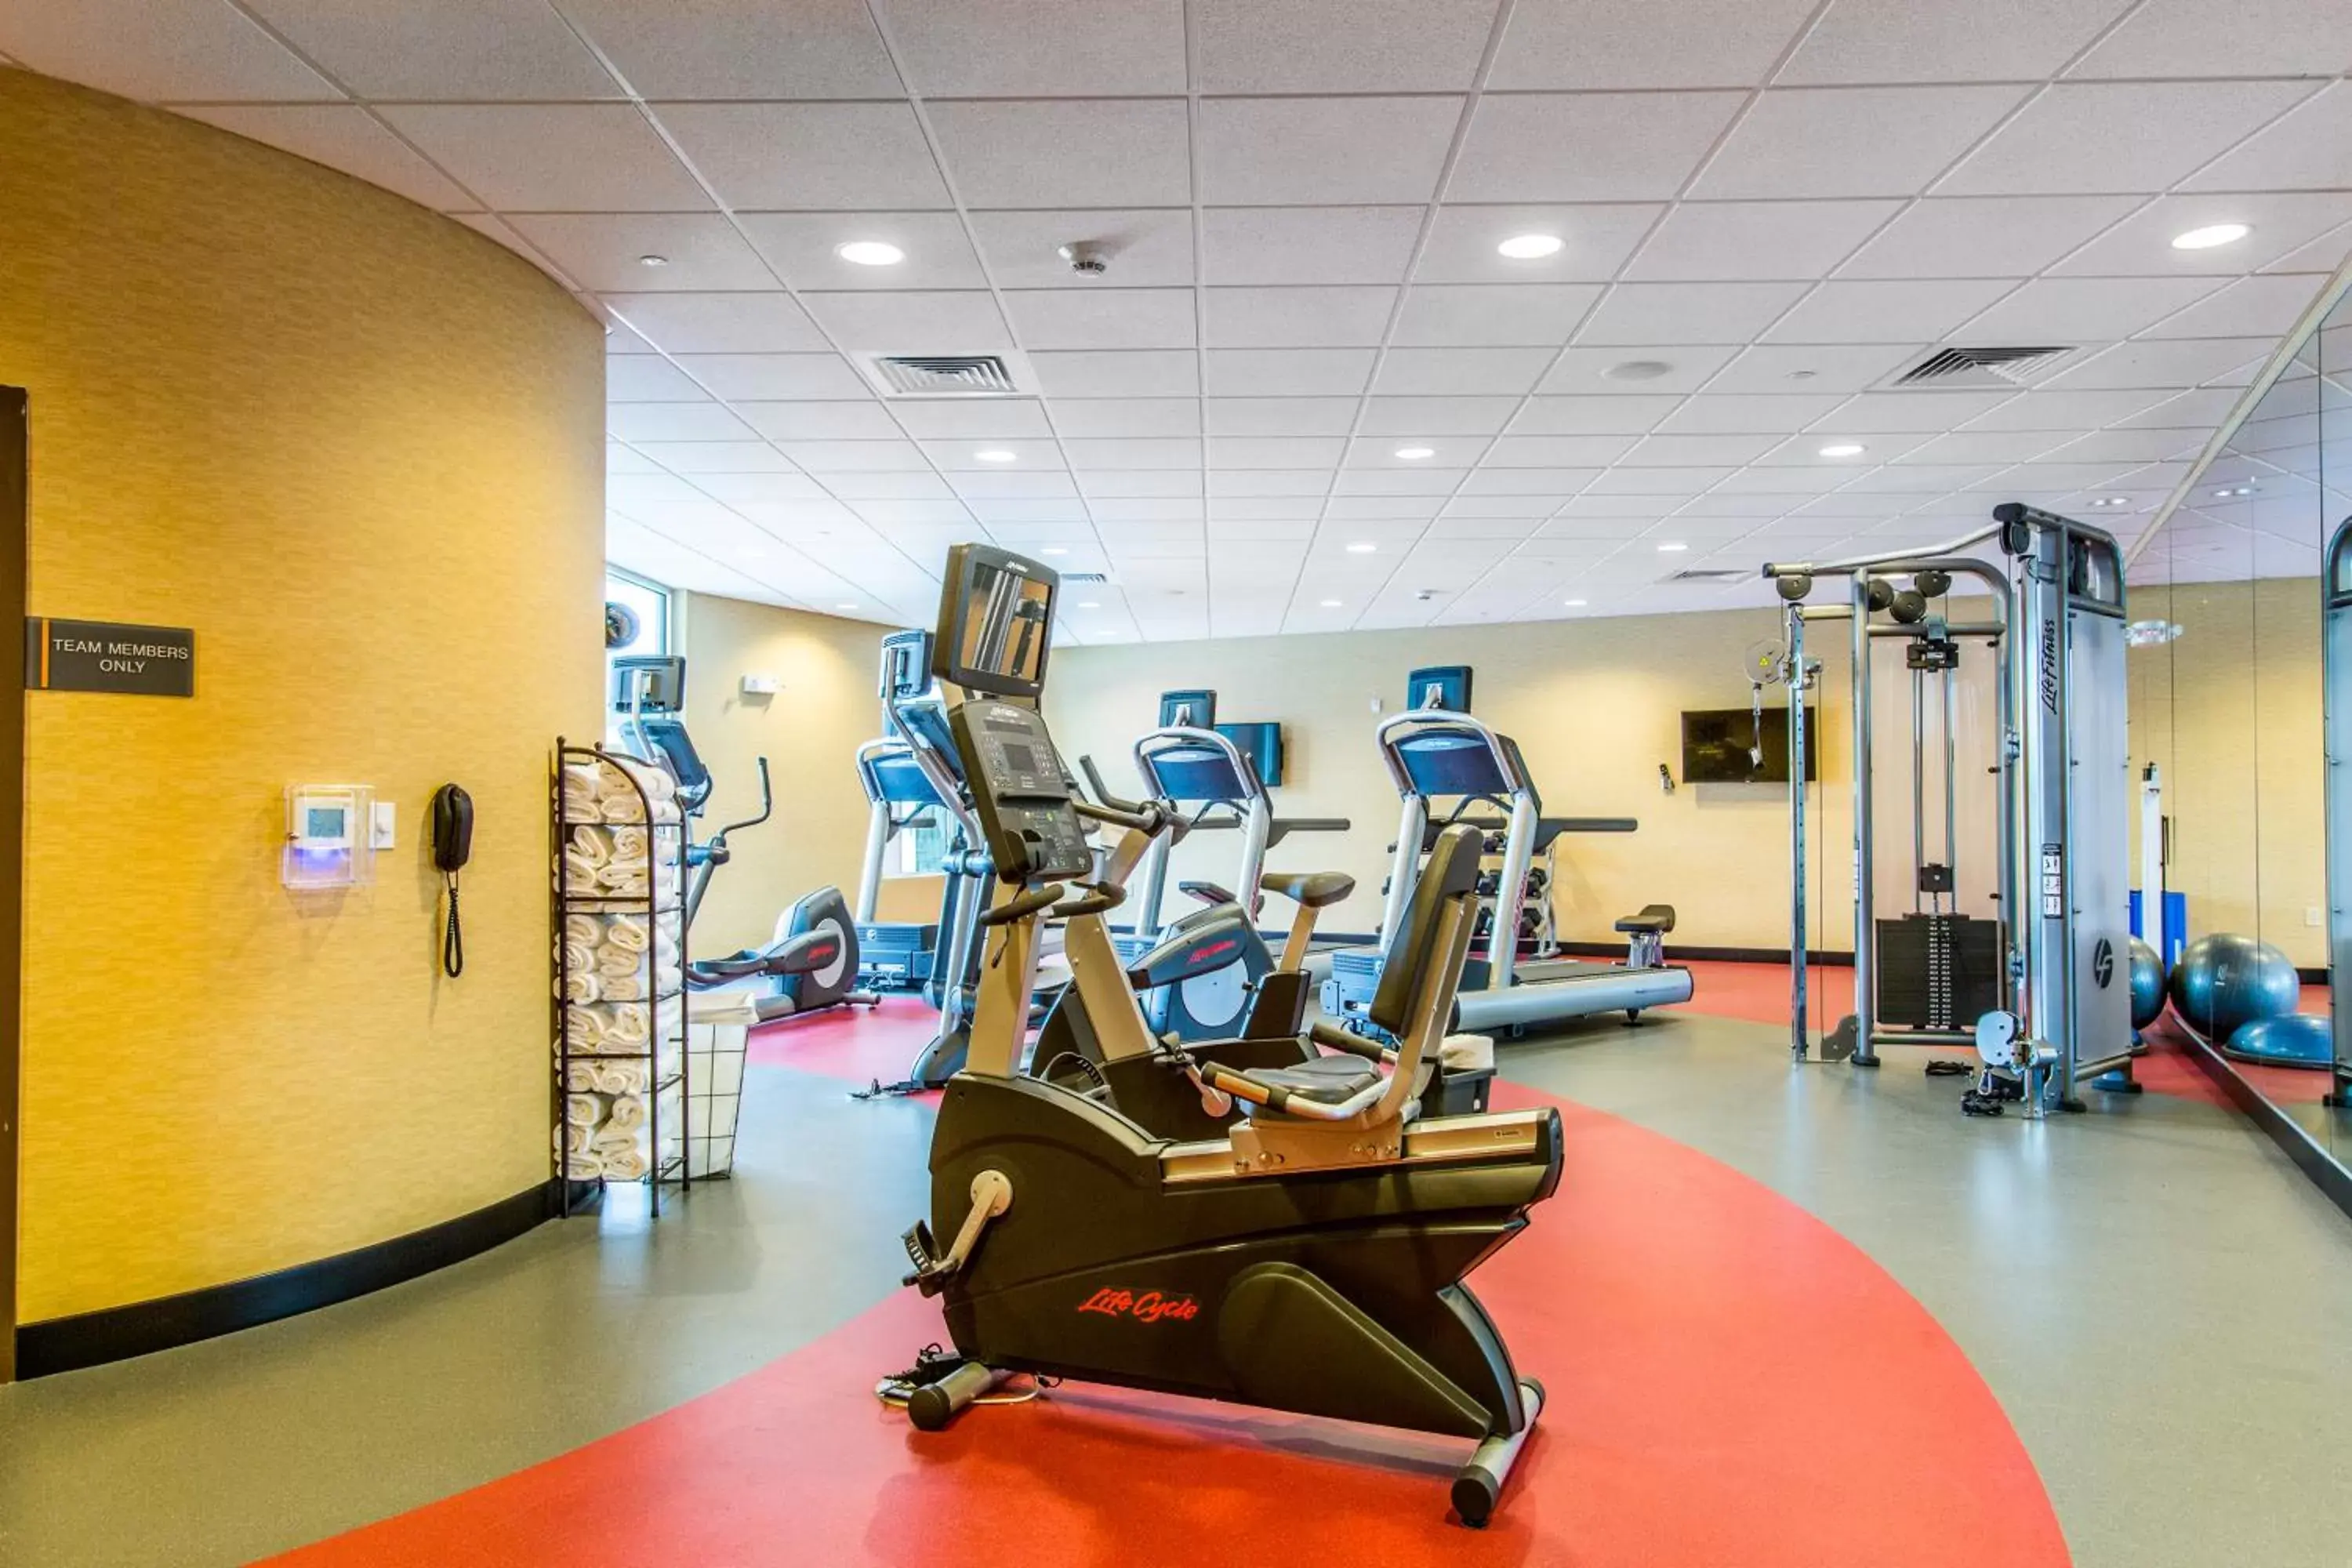 Fitness centre/facilities, Fitness Center/Facilities in Cambria Hotel Plano - Frisco